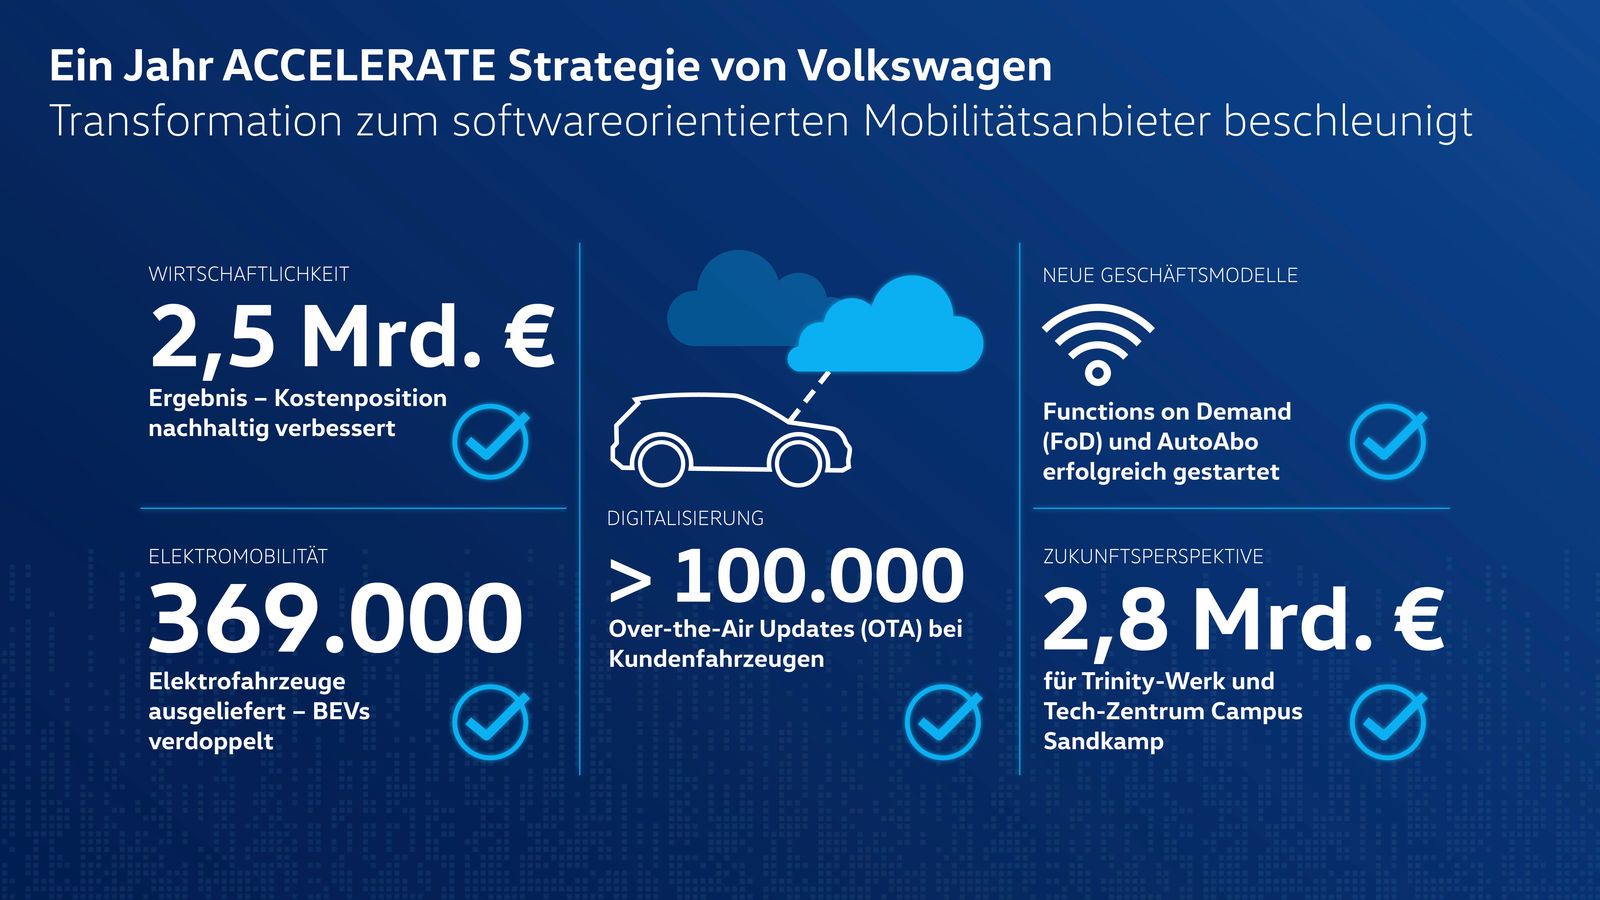 Ein Jahr ACCELERATE Strategie: Volkswagen stärkt Wirtschaftlichkeit und beschleunigt Transformation